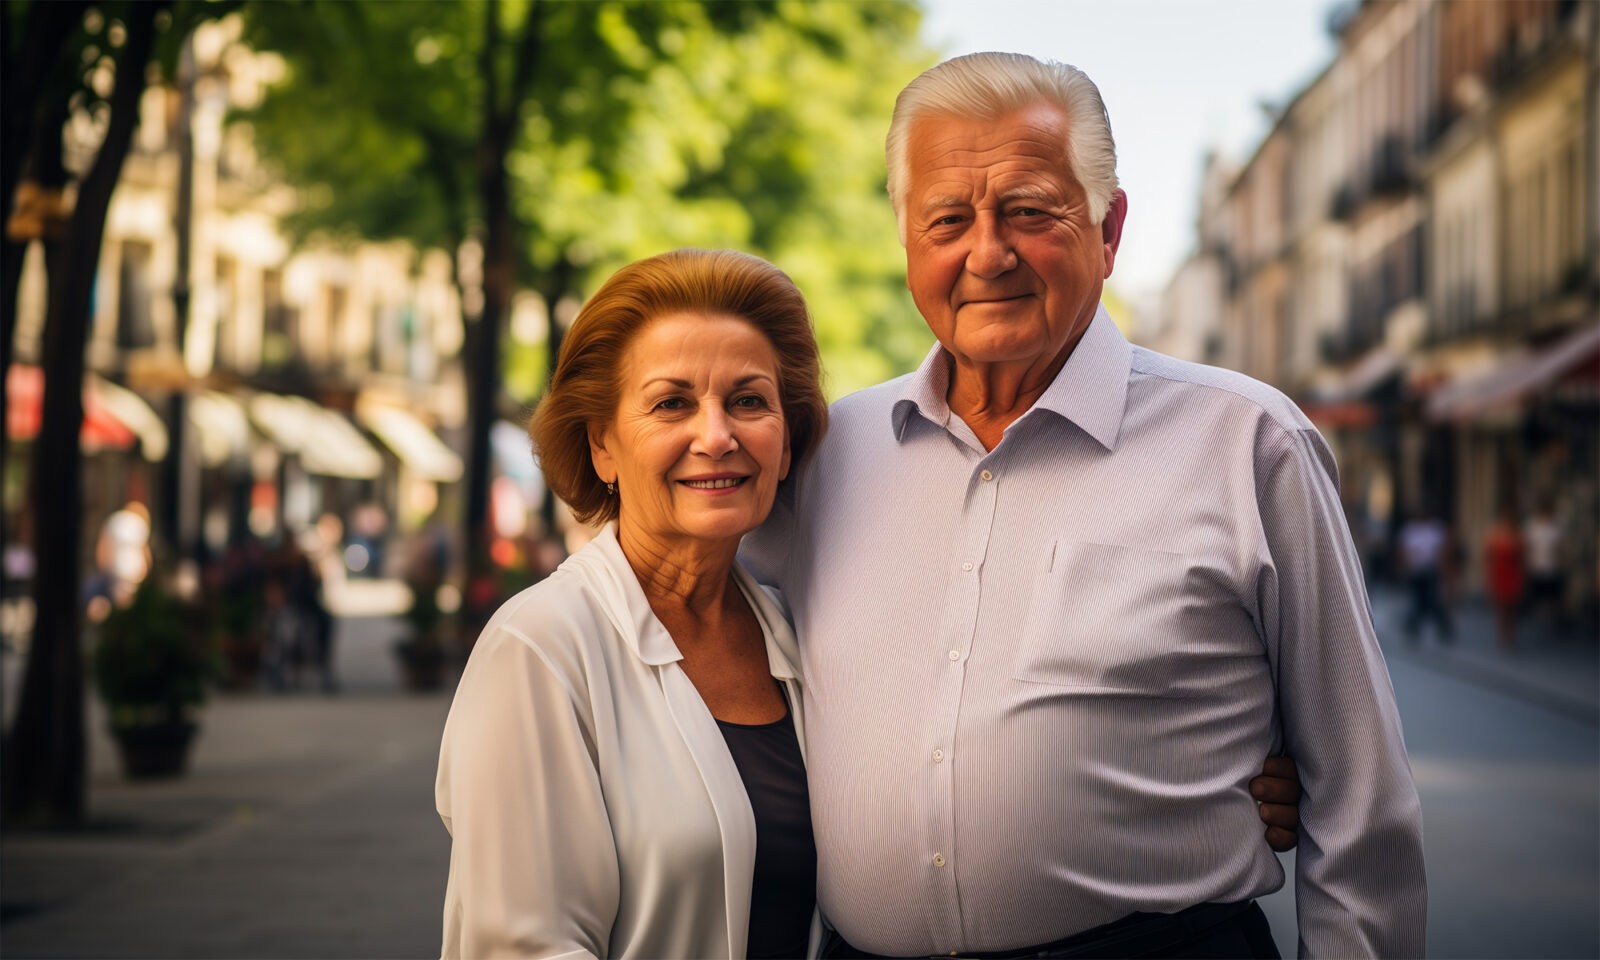 Sretan umirovljenički par uživa u zajedništvu i podršci, suprotstavljajući se izazovima ekonomske nesigurnosti. Dok se mnogi bore za osnovne potrebe, oni nalaze radost u jednostavnim trenucima zajedništva. Podržimo starije i cijenimo njihovu ulogu u društvu.